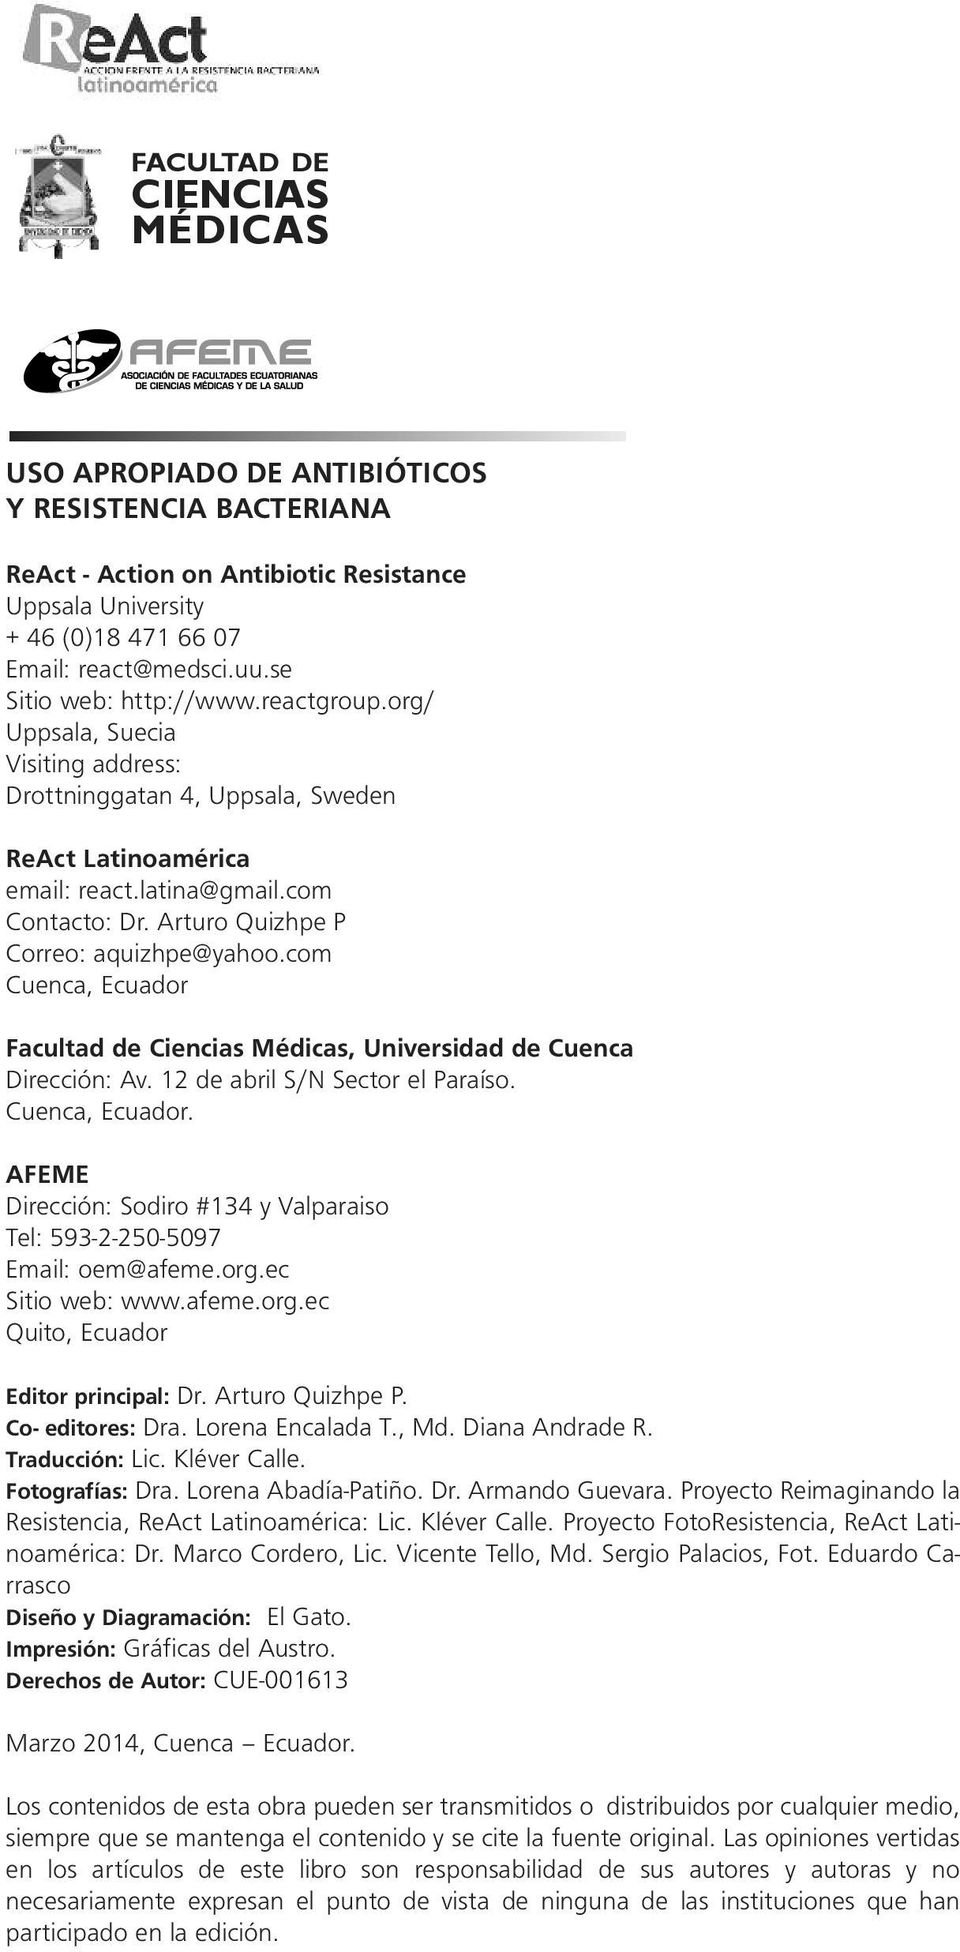 Arturo Quizhpe P Correo: aquizhpe@yahoo.com Cueca, Ecuador Facultad de Ciecias Médicas, Uiversidad de Cueca Direcció: Av. 12 de abril S/N Sector el Paraíso. Cueca, Ecuador. AFEME Direcció: Sodiro #134 y Valparaiso Tel: 593-2-250-5097 Email: oem@afeme.